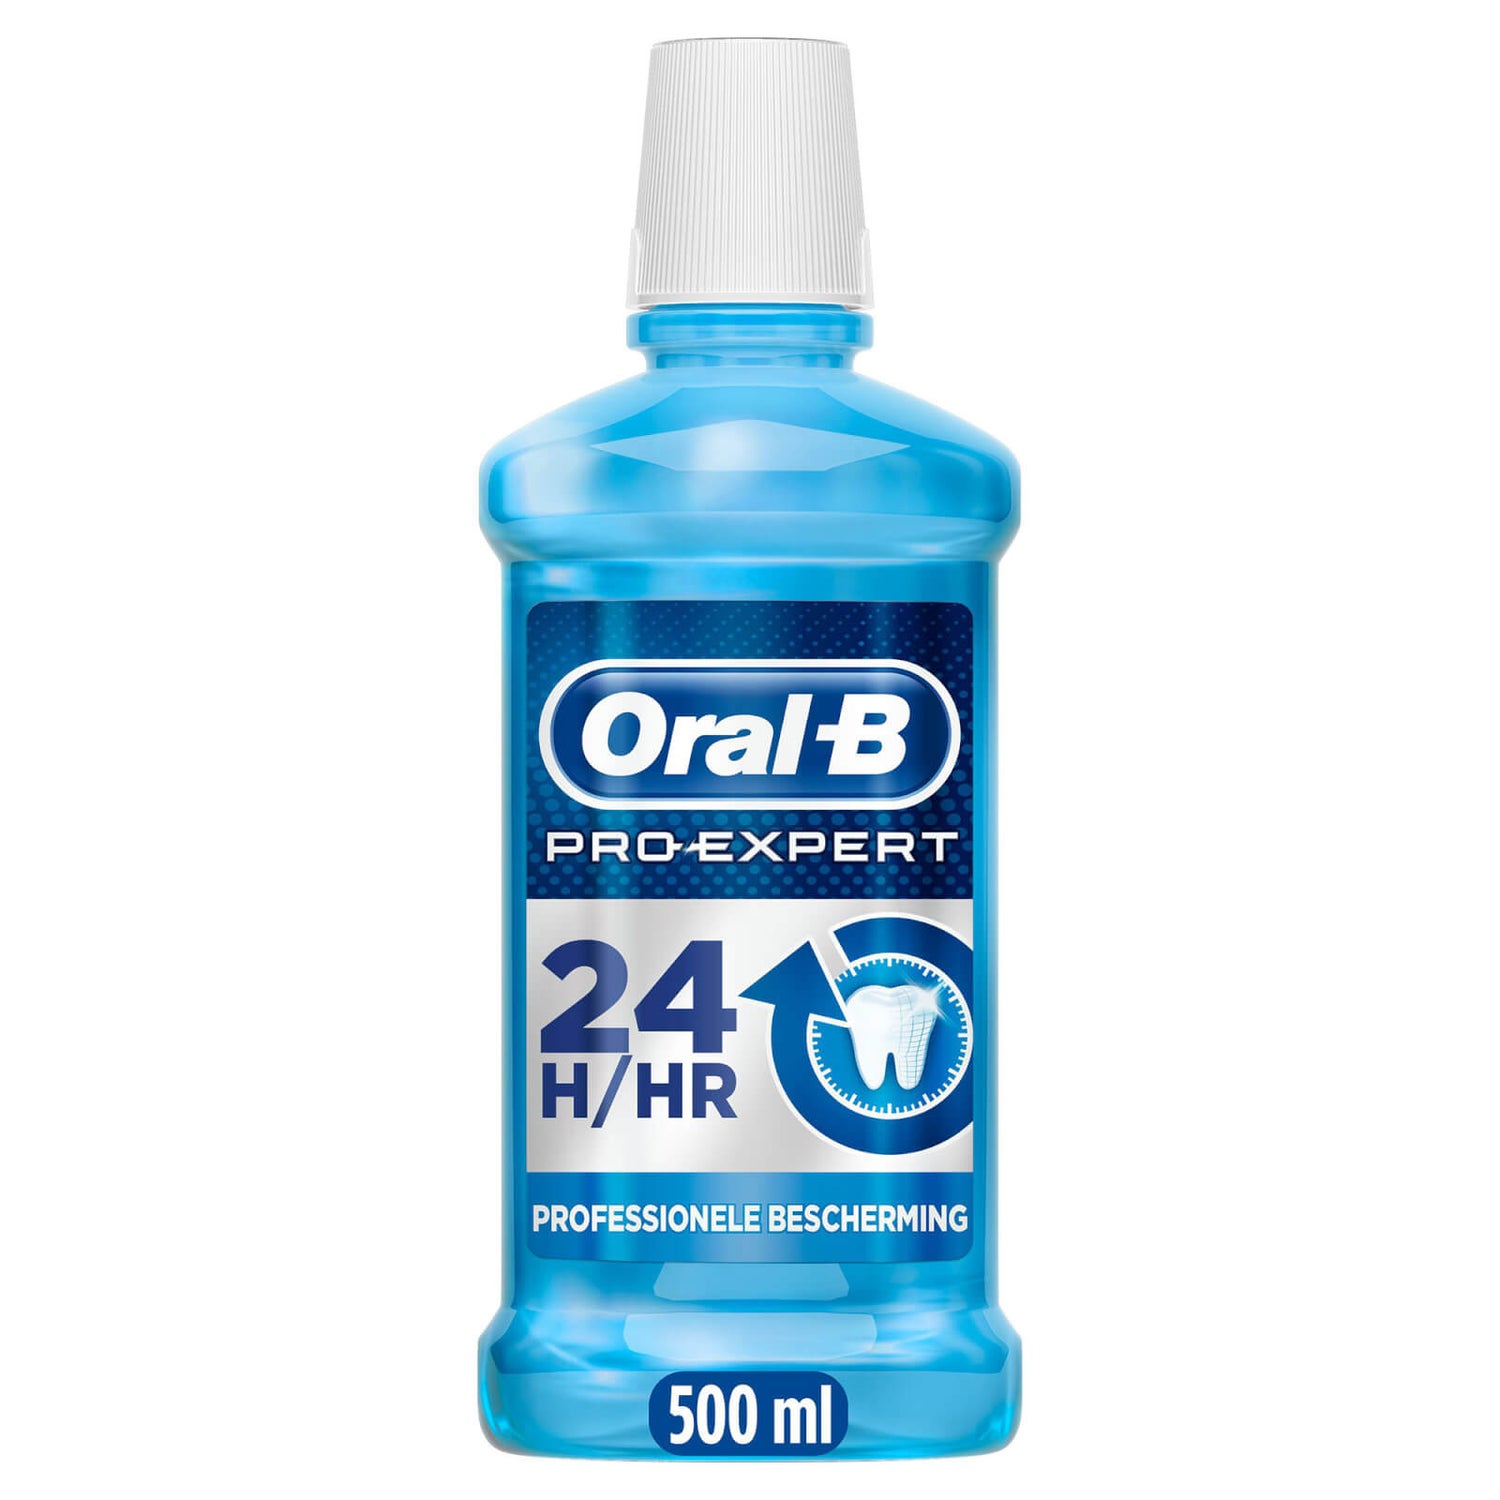 Oral-B Pro-Expert Professionele Bescherming Frisse Muntsmaak Mondwater, 500 ml